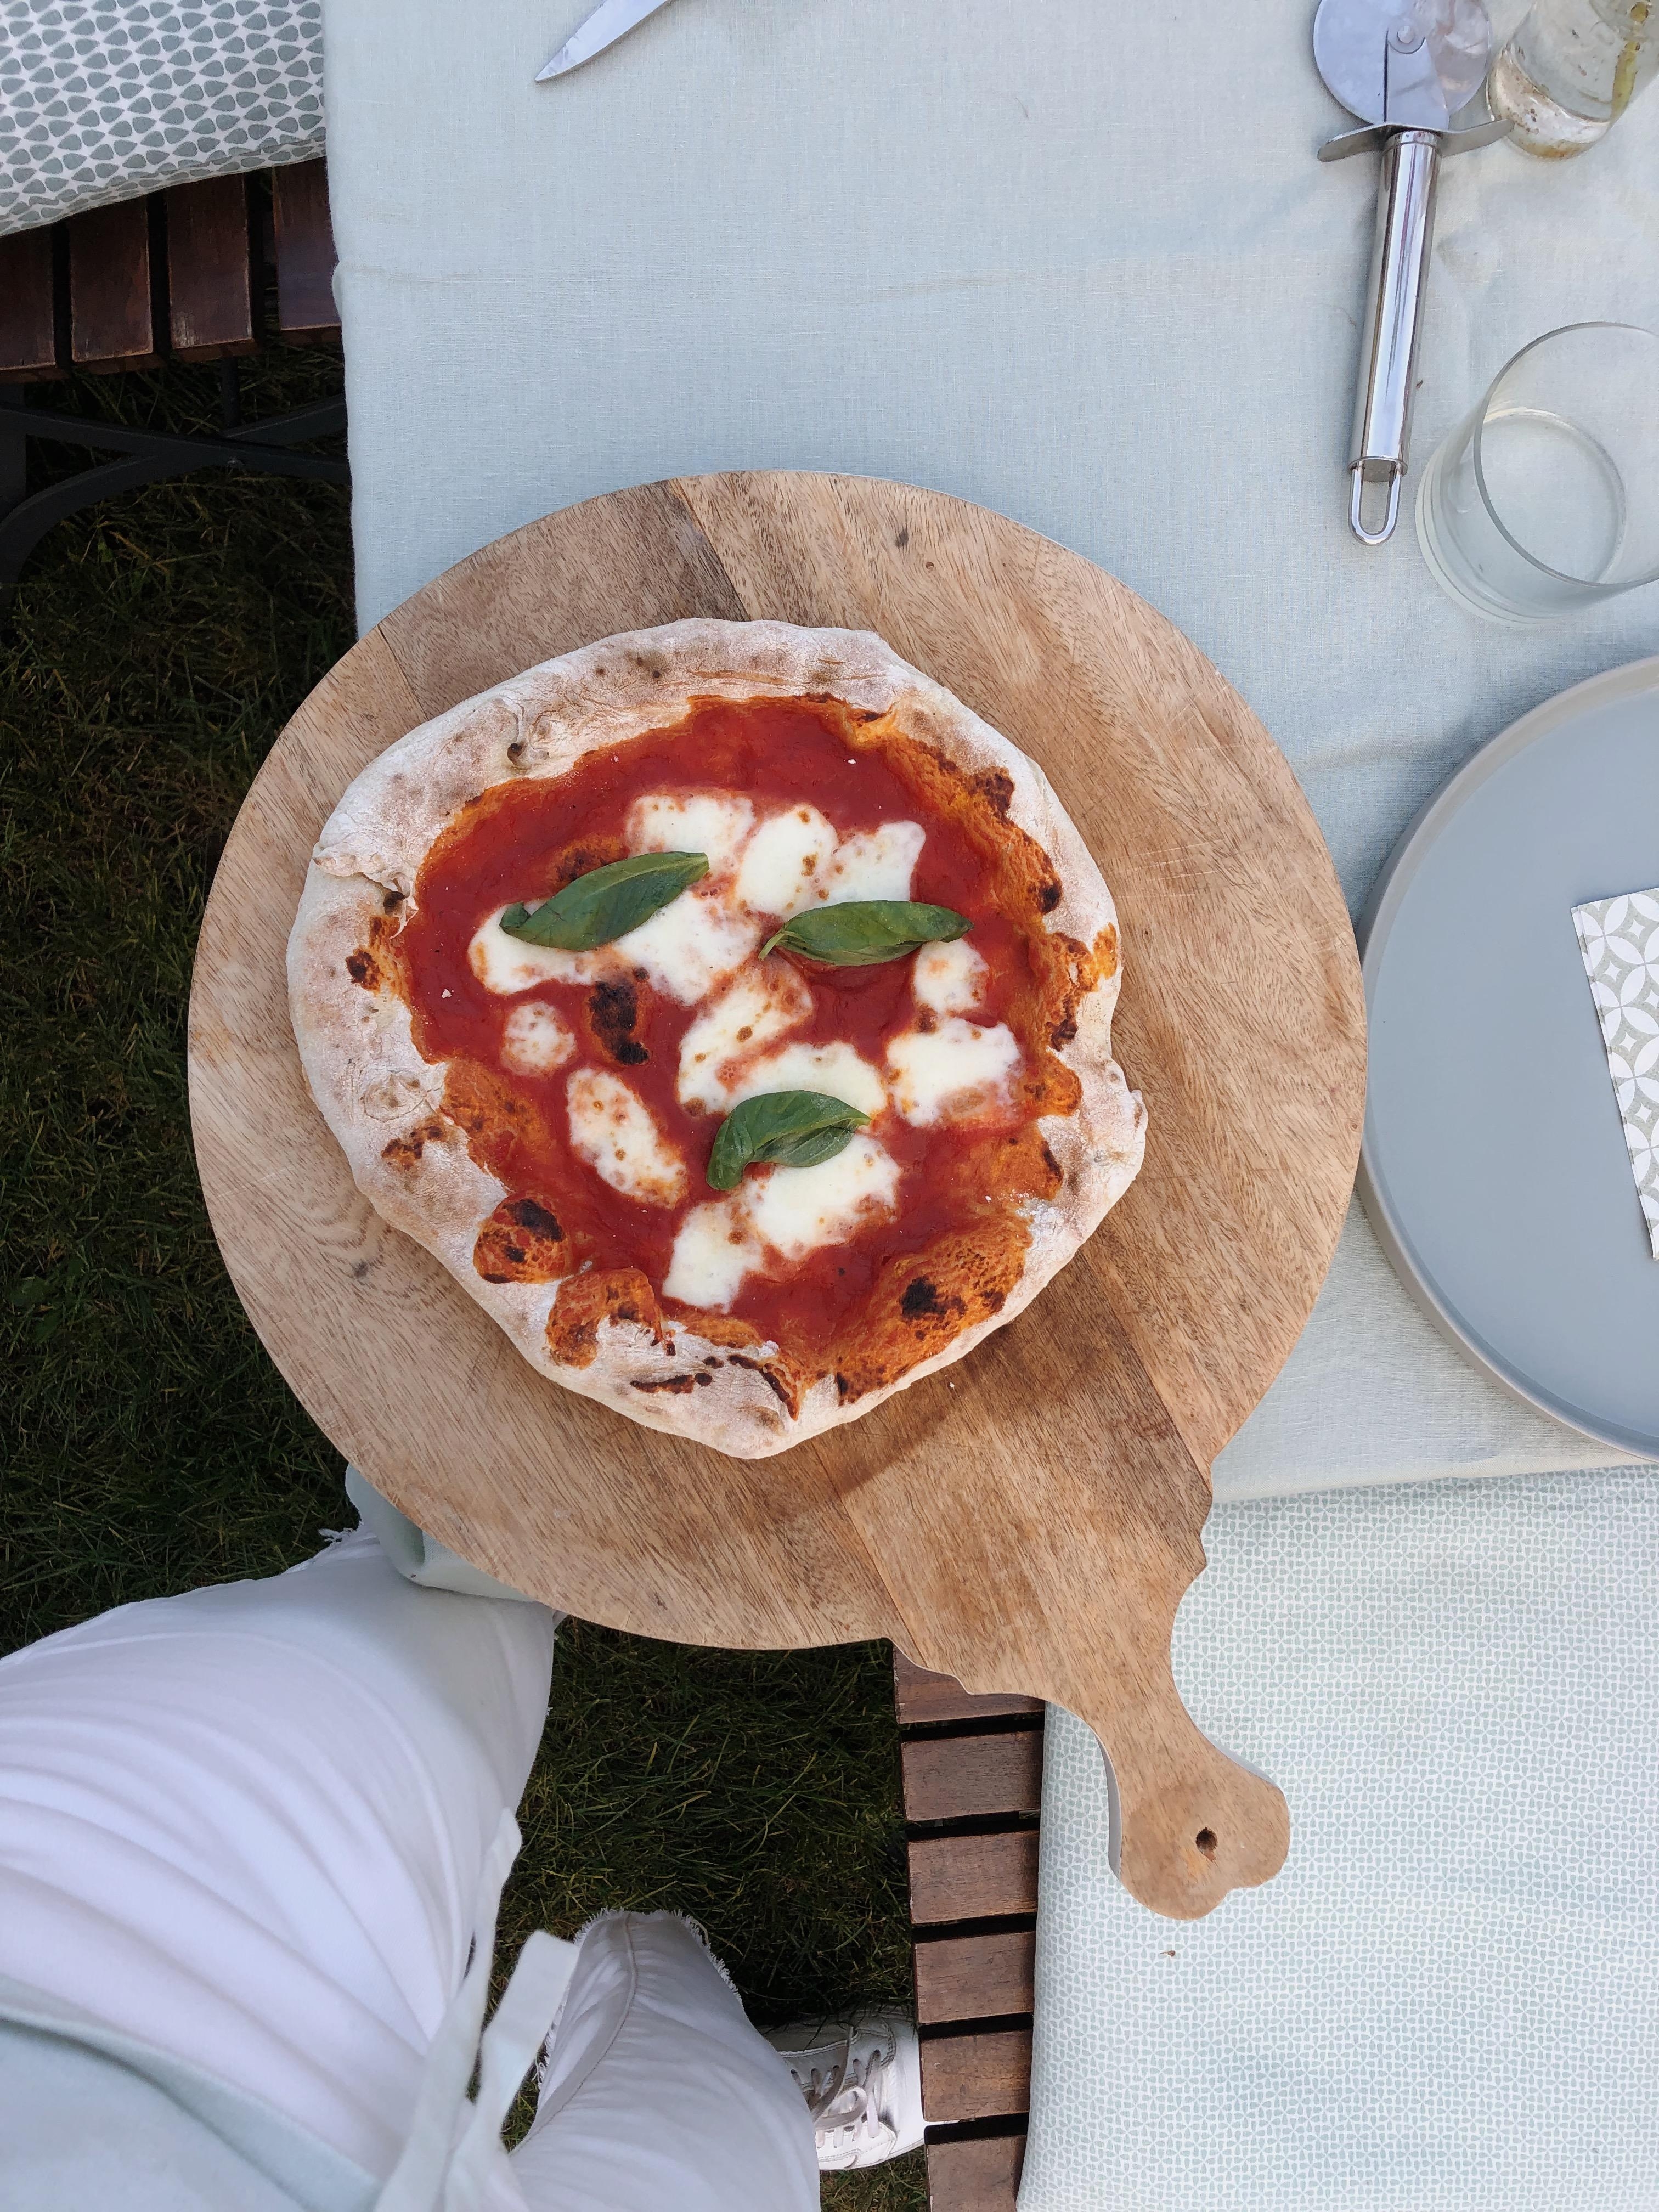 Unförmig, aber so lecker 🌿 #pizzaparty #gartenparty #homemade #pizza